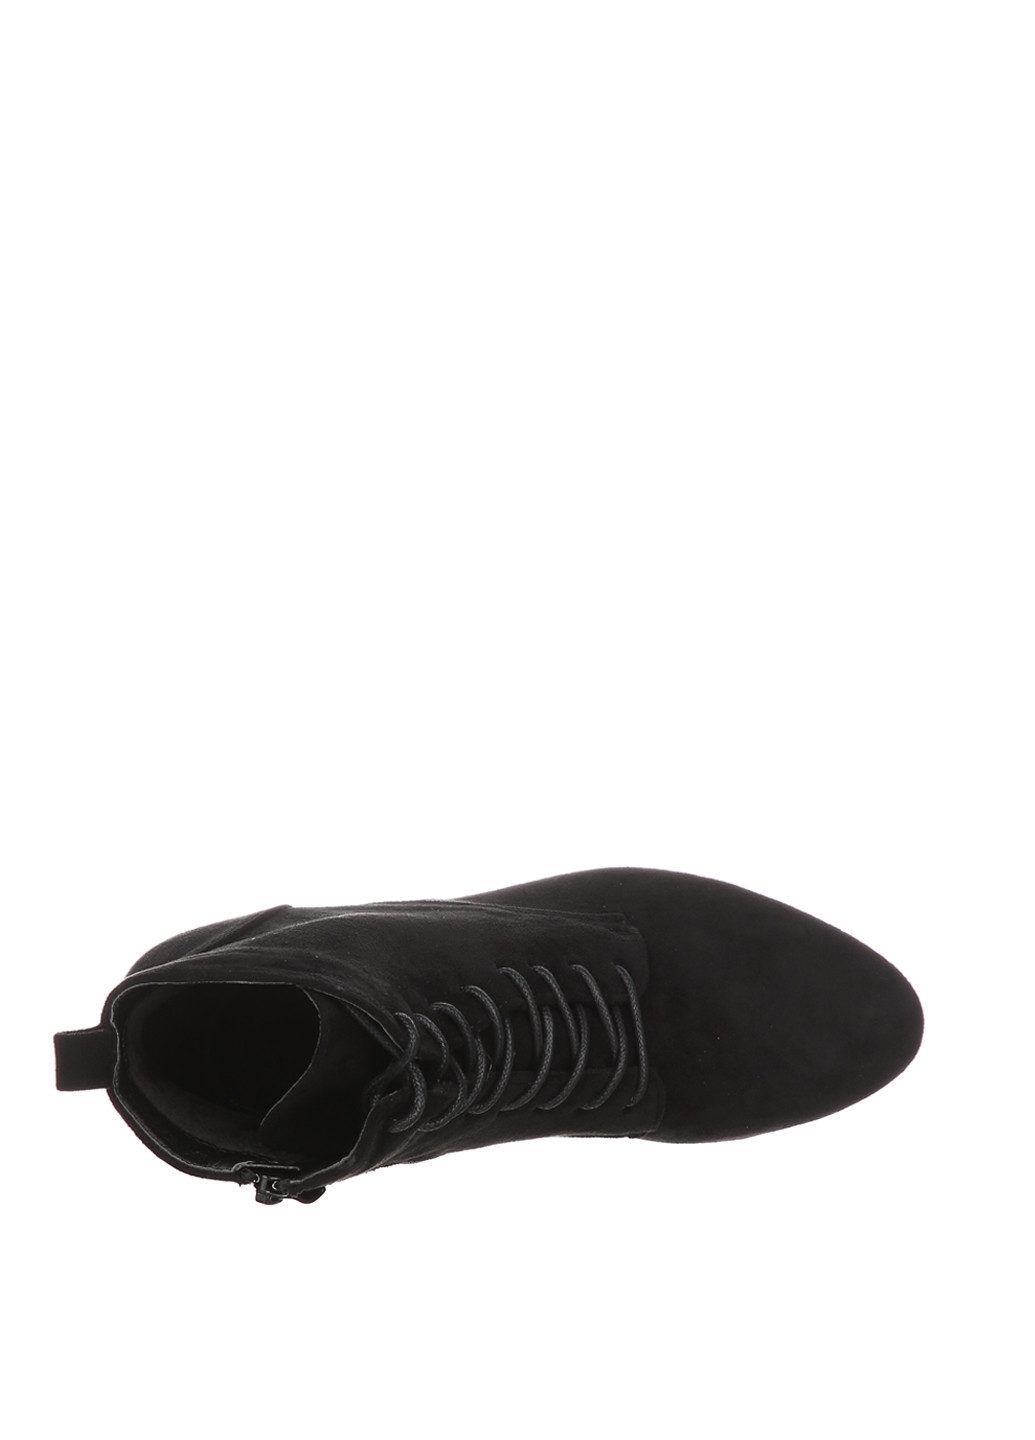 Осенние ботинки Horoso со шнуровкой из искусственной замши